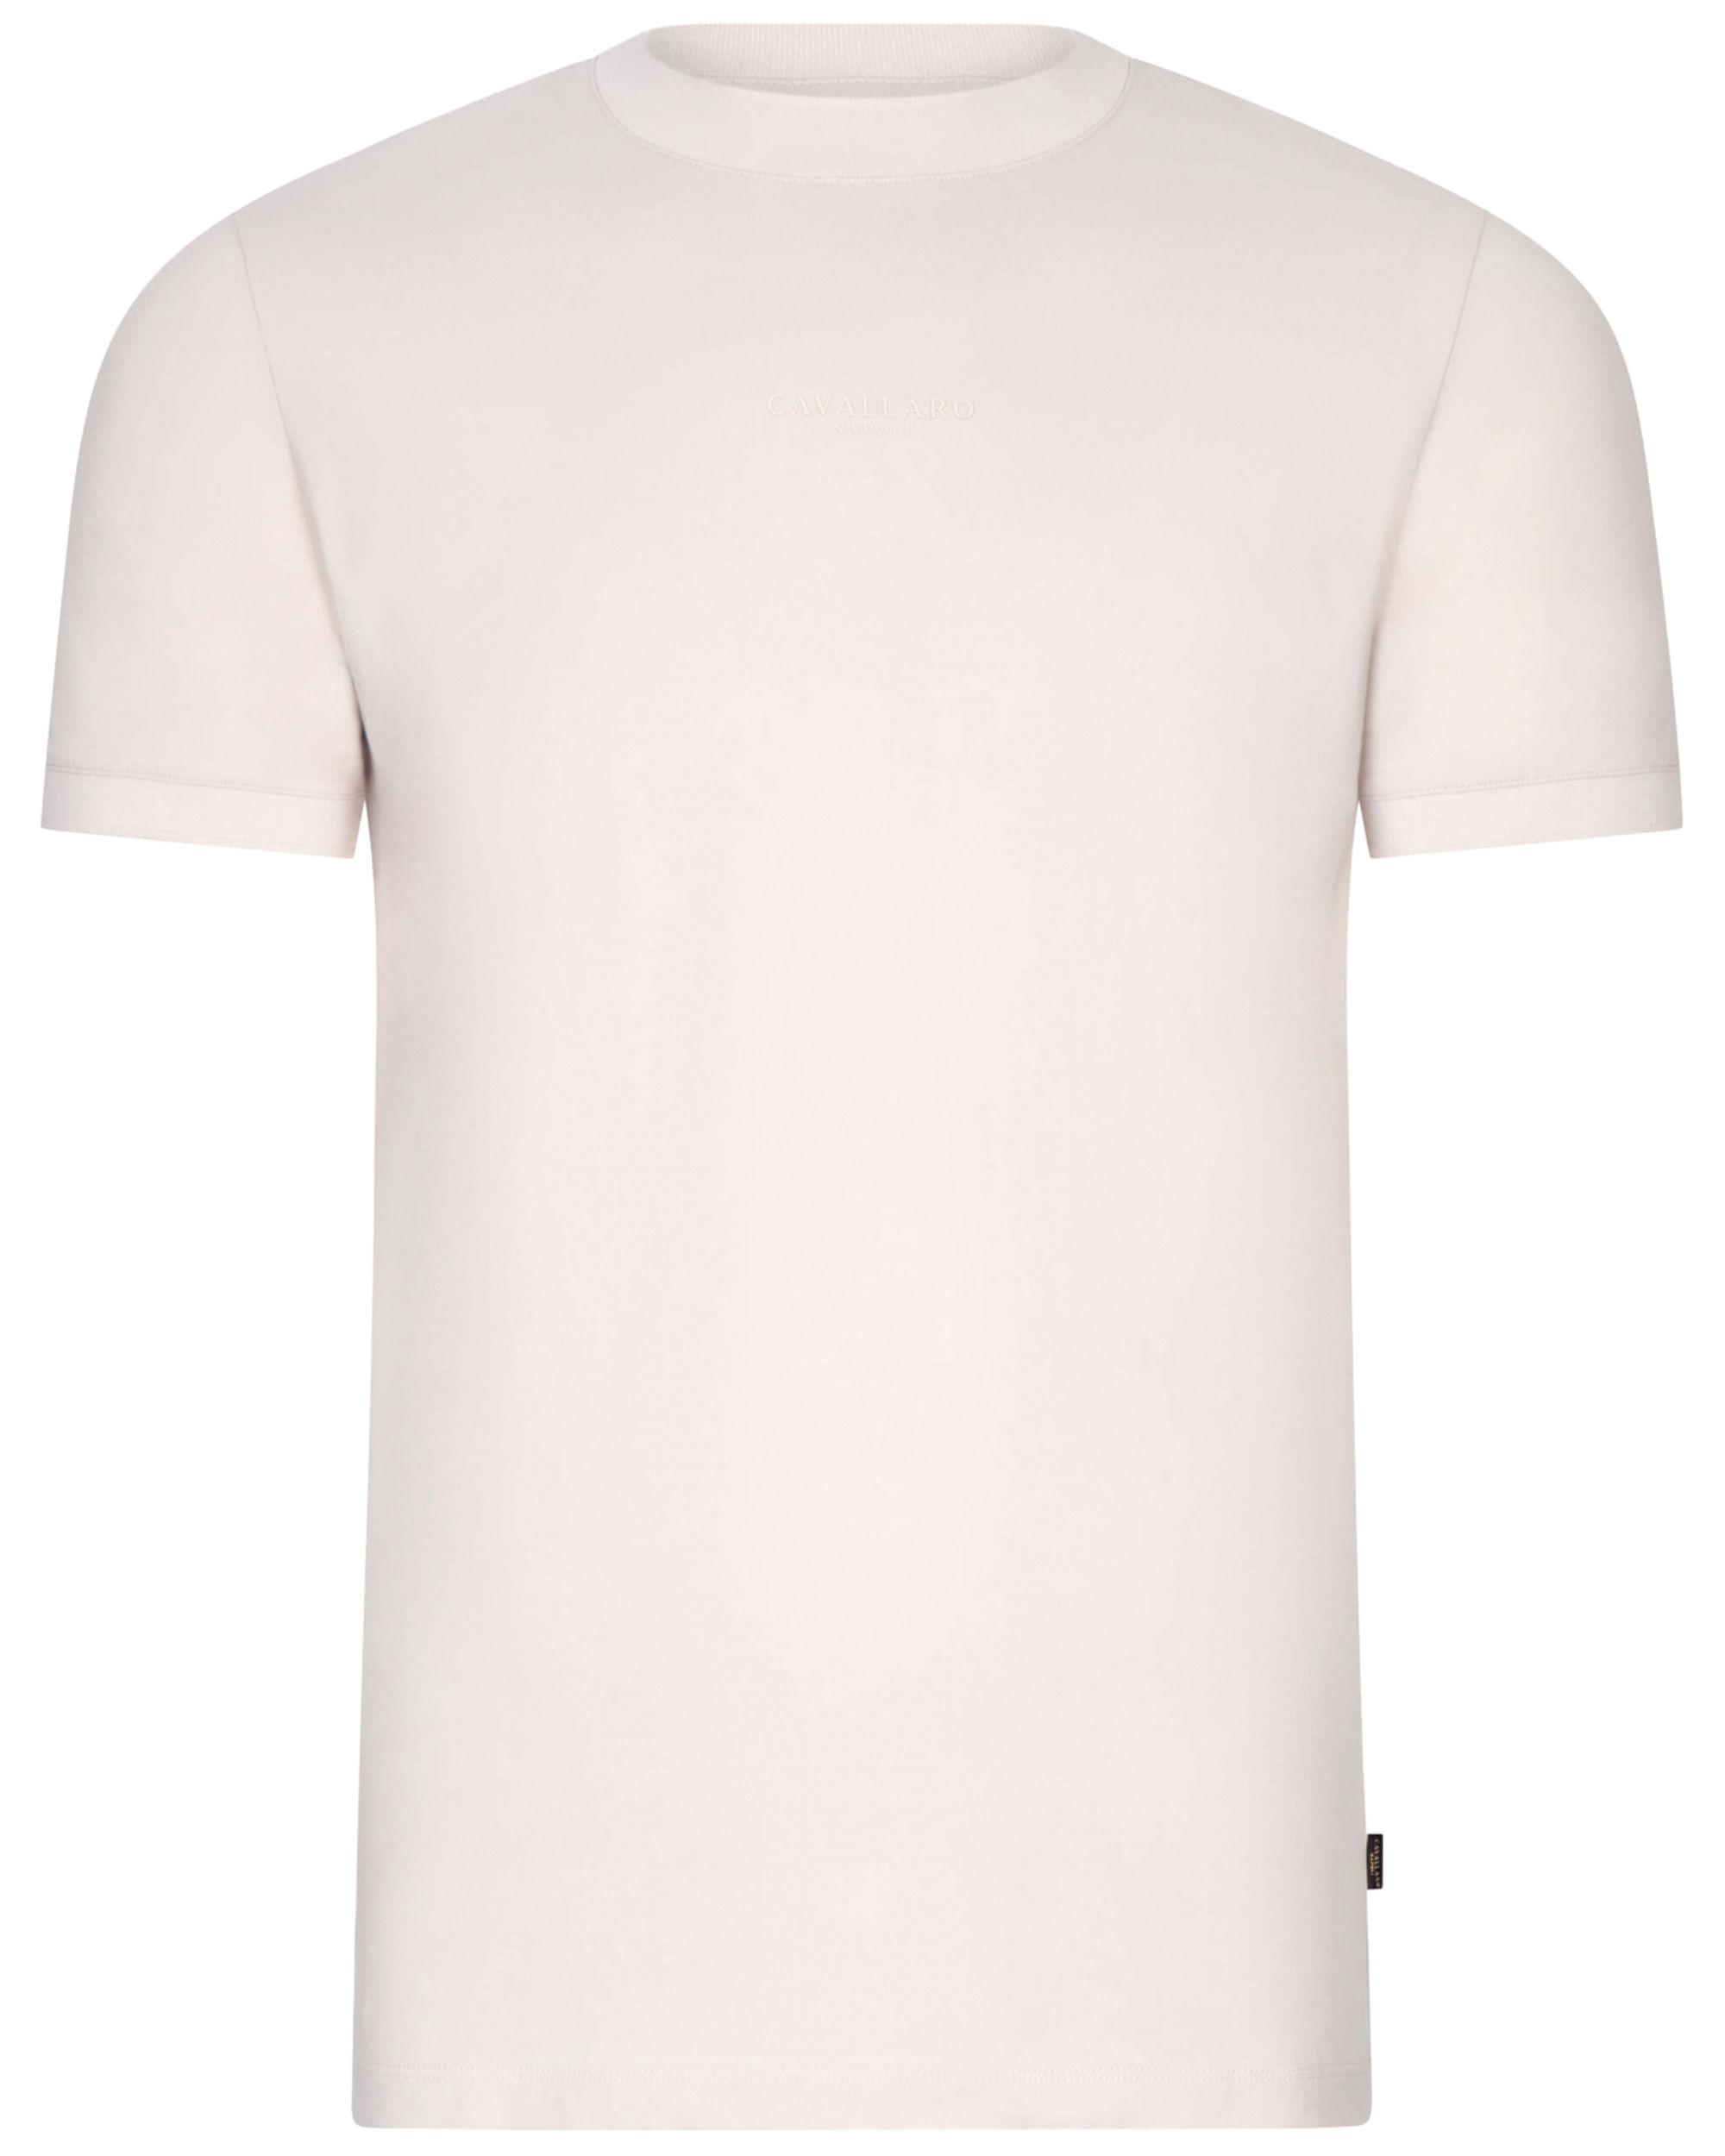 Cavallaro Darenio T-shirt KM Kit 094418-001-L